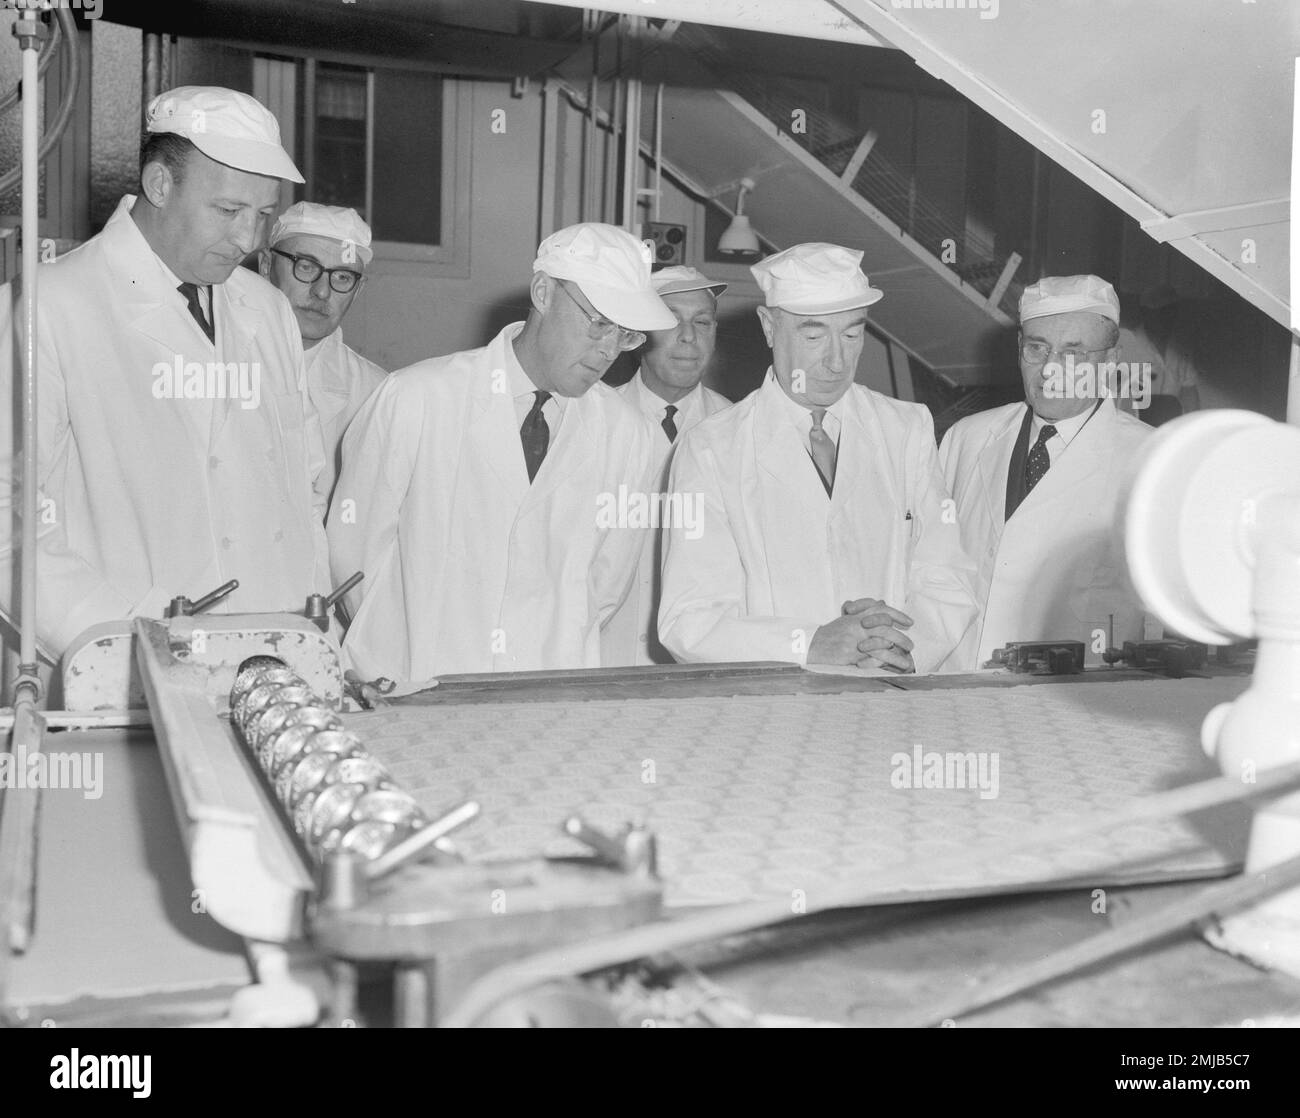 Storia dell'Olanda: Sua altezza reale il principe Bernhard ha fatto una visita di lavoro ad una fabbrica di cioccolato; Data: 18 aprile 1962 Foto Stock